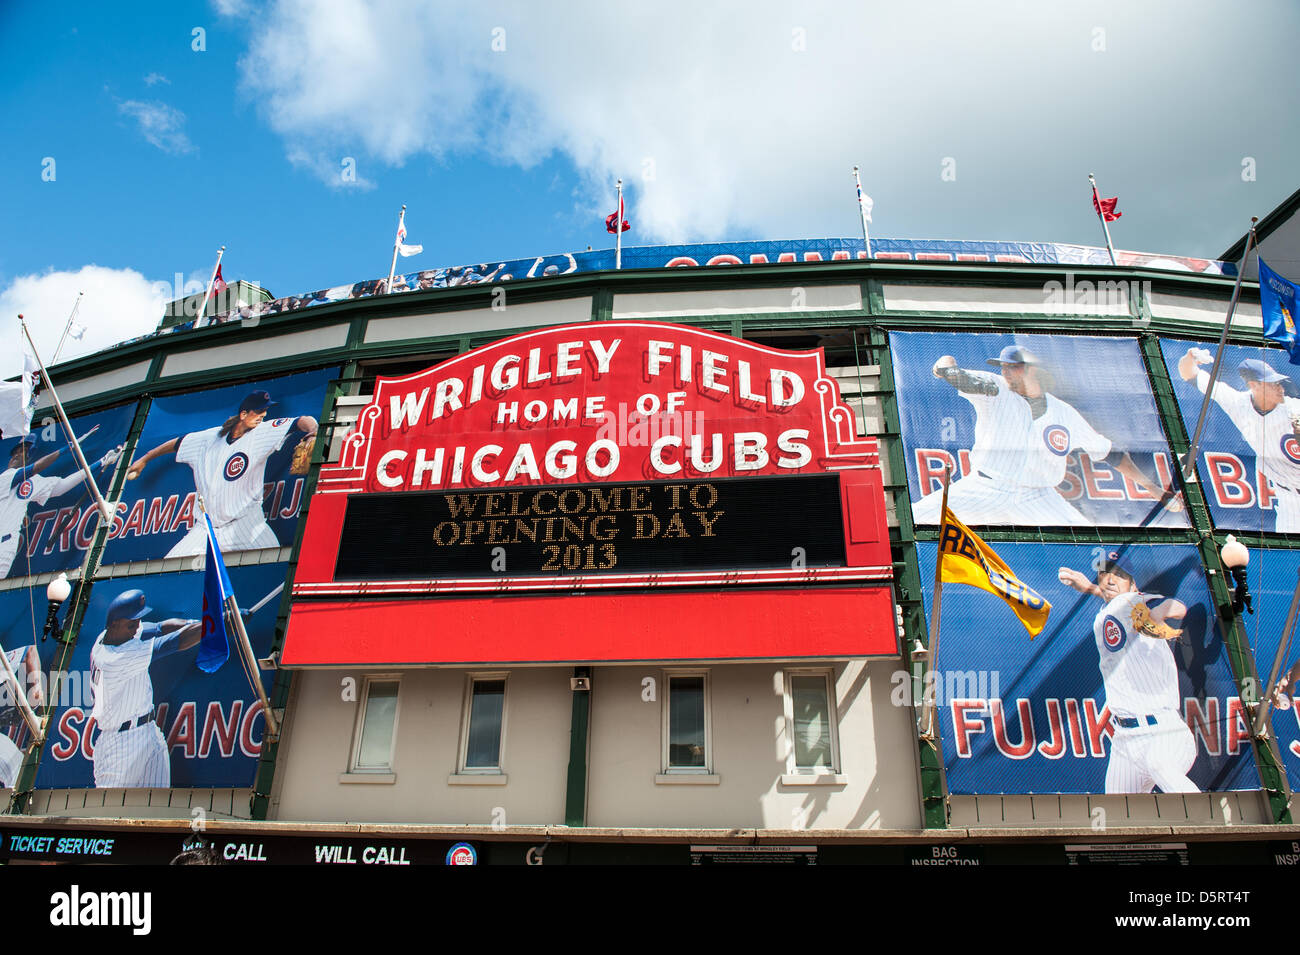 Chicago, USA. 8 avril, 2013. Wrigley Field de Chicago sur la Ligue Majeure de Baseball 2013 Ouverture à domicile. Crédit : Max Herman/Alamy Live News Banque D'Images